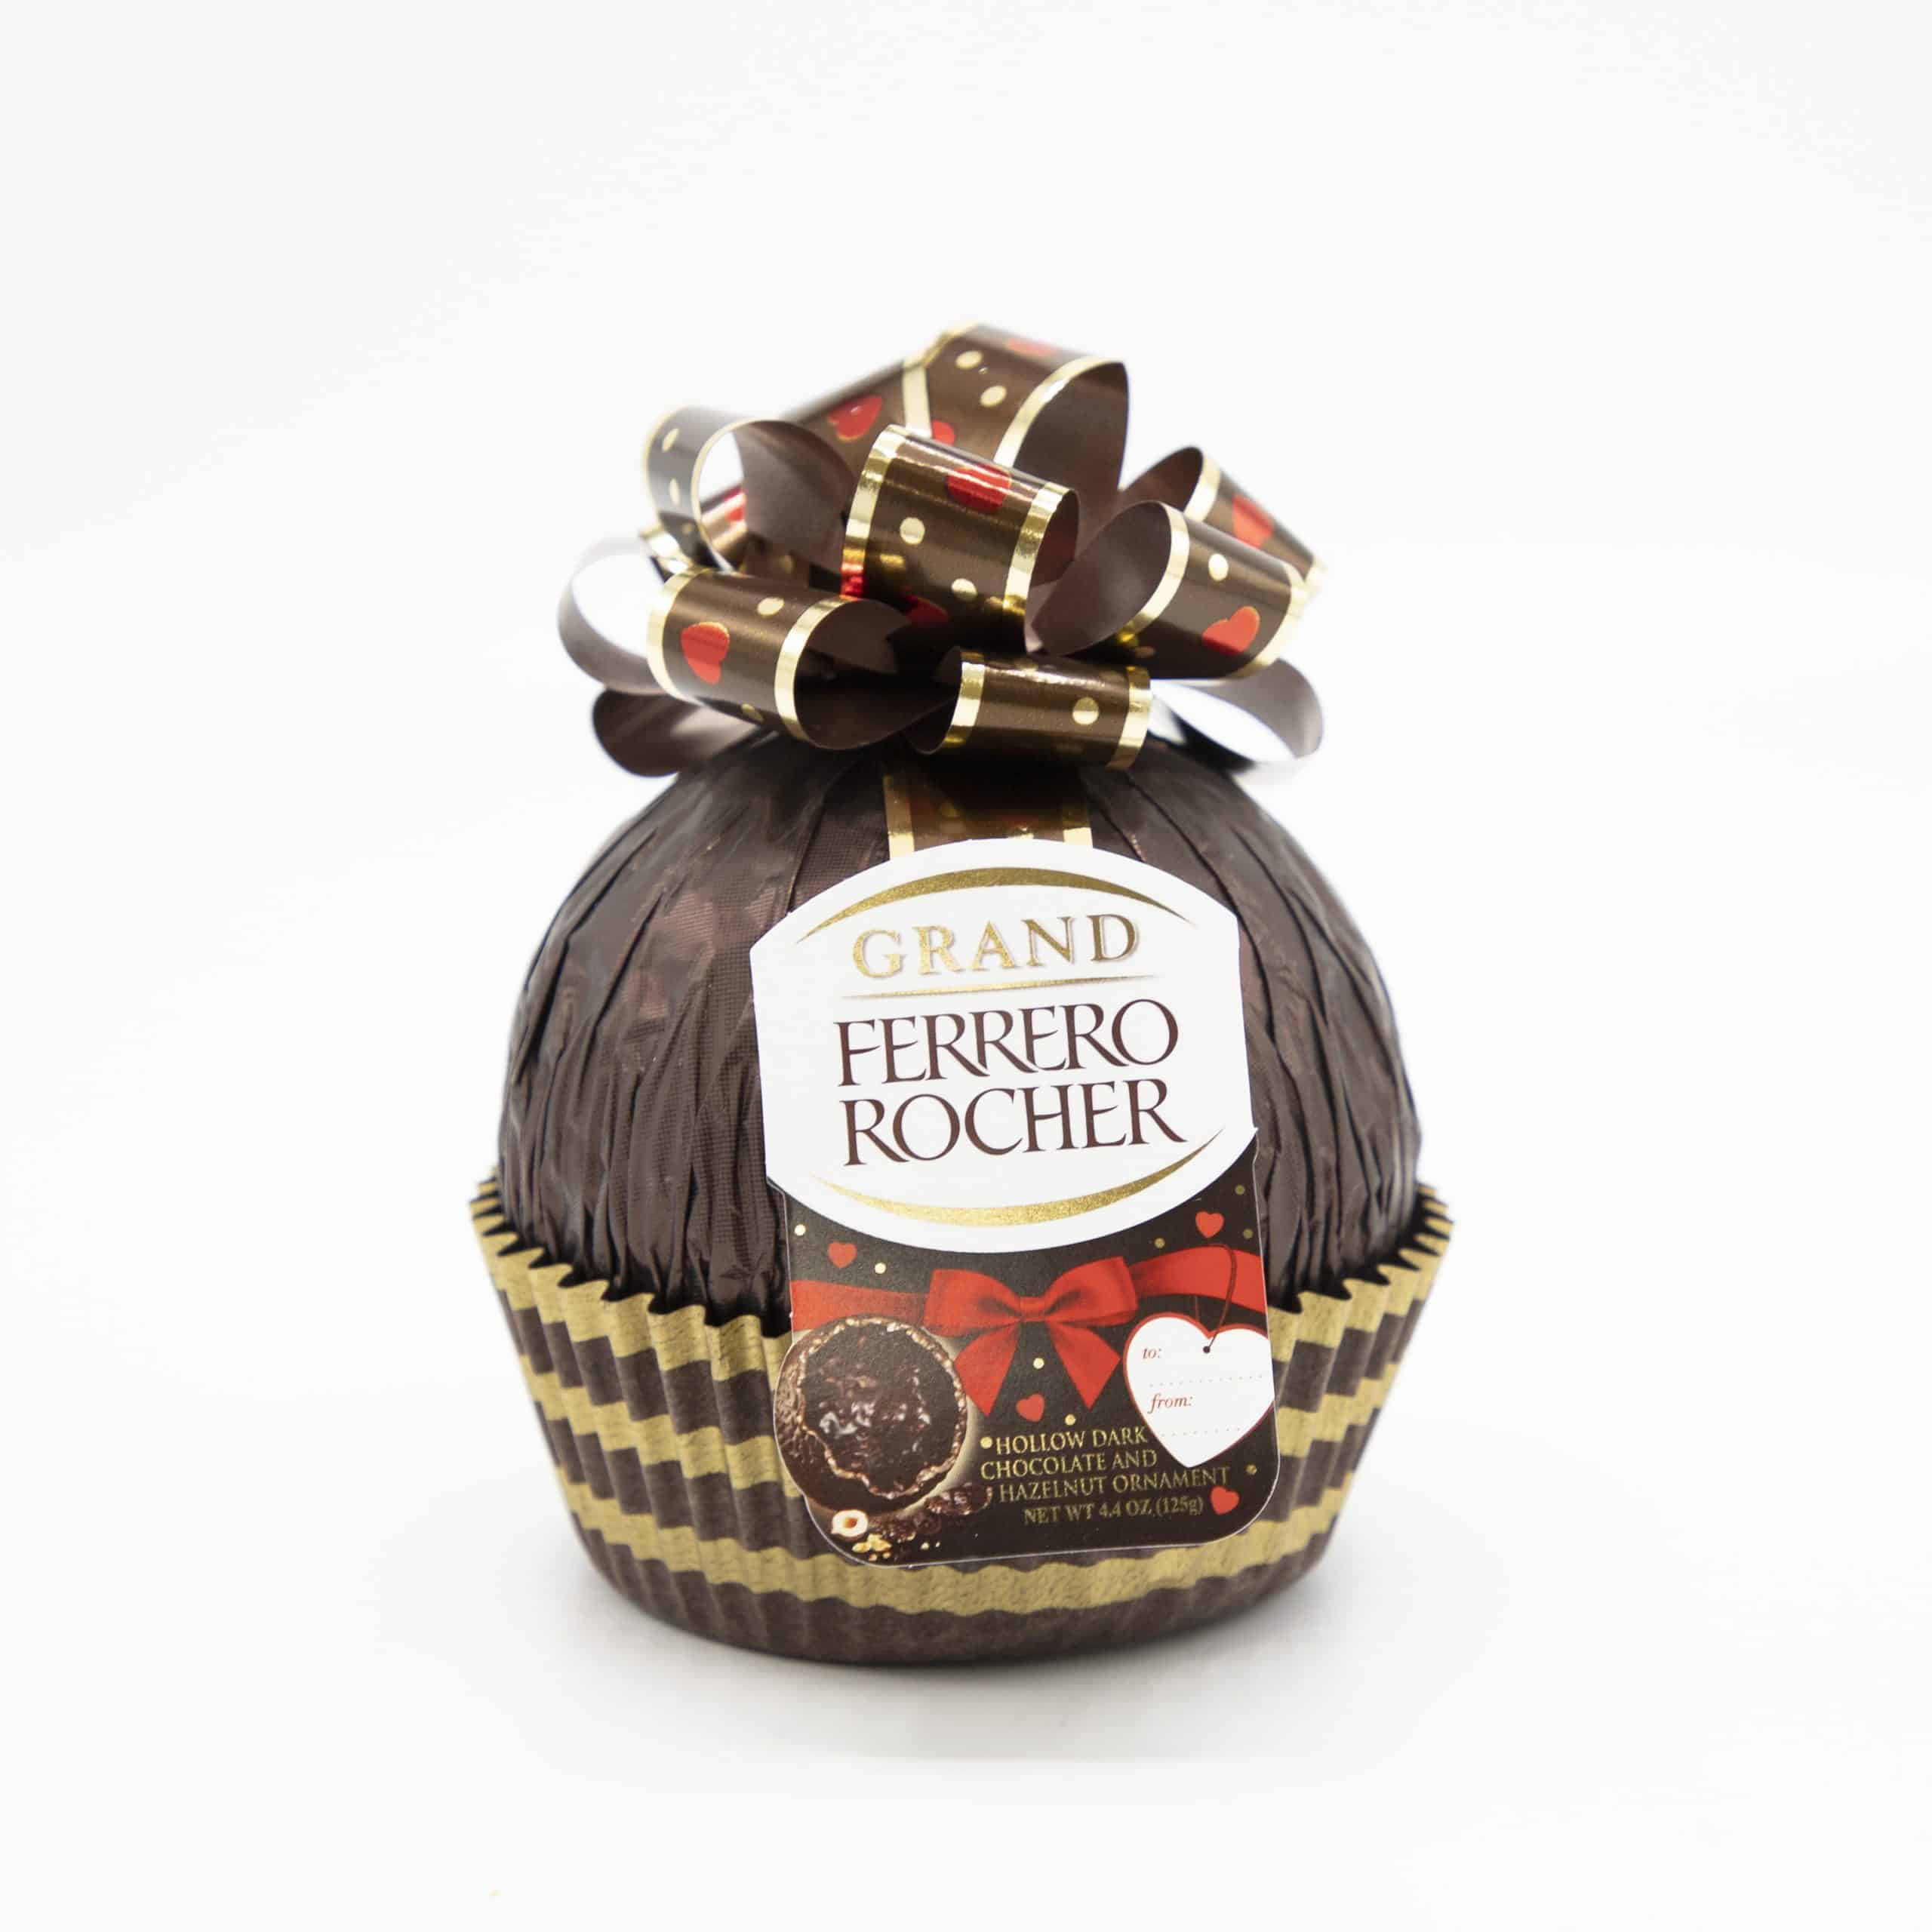 Ferrero Rocher Grand Ferrero Rocher Reviews